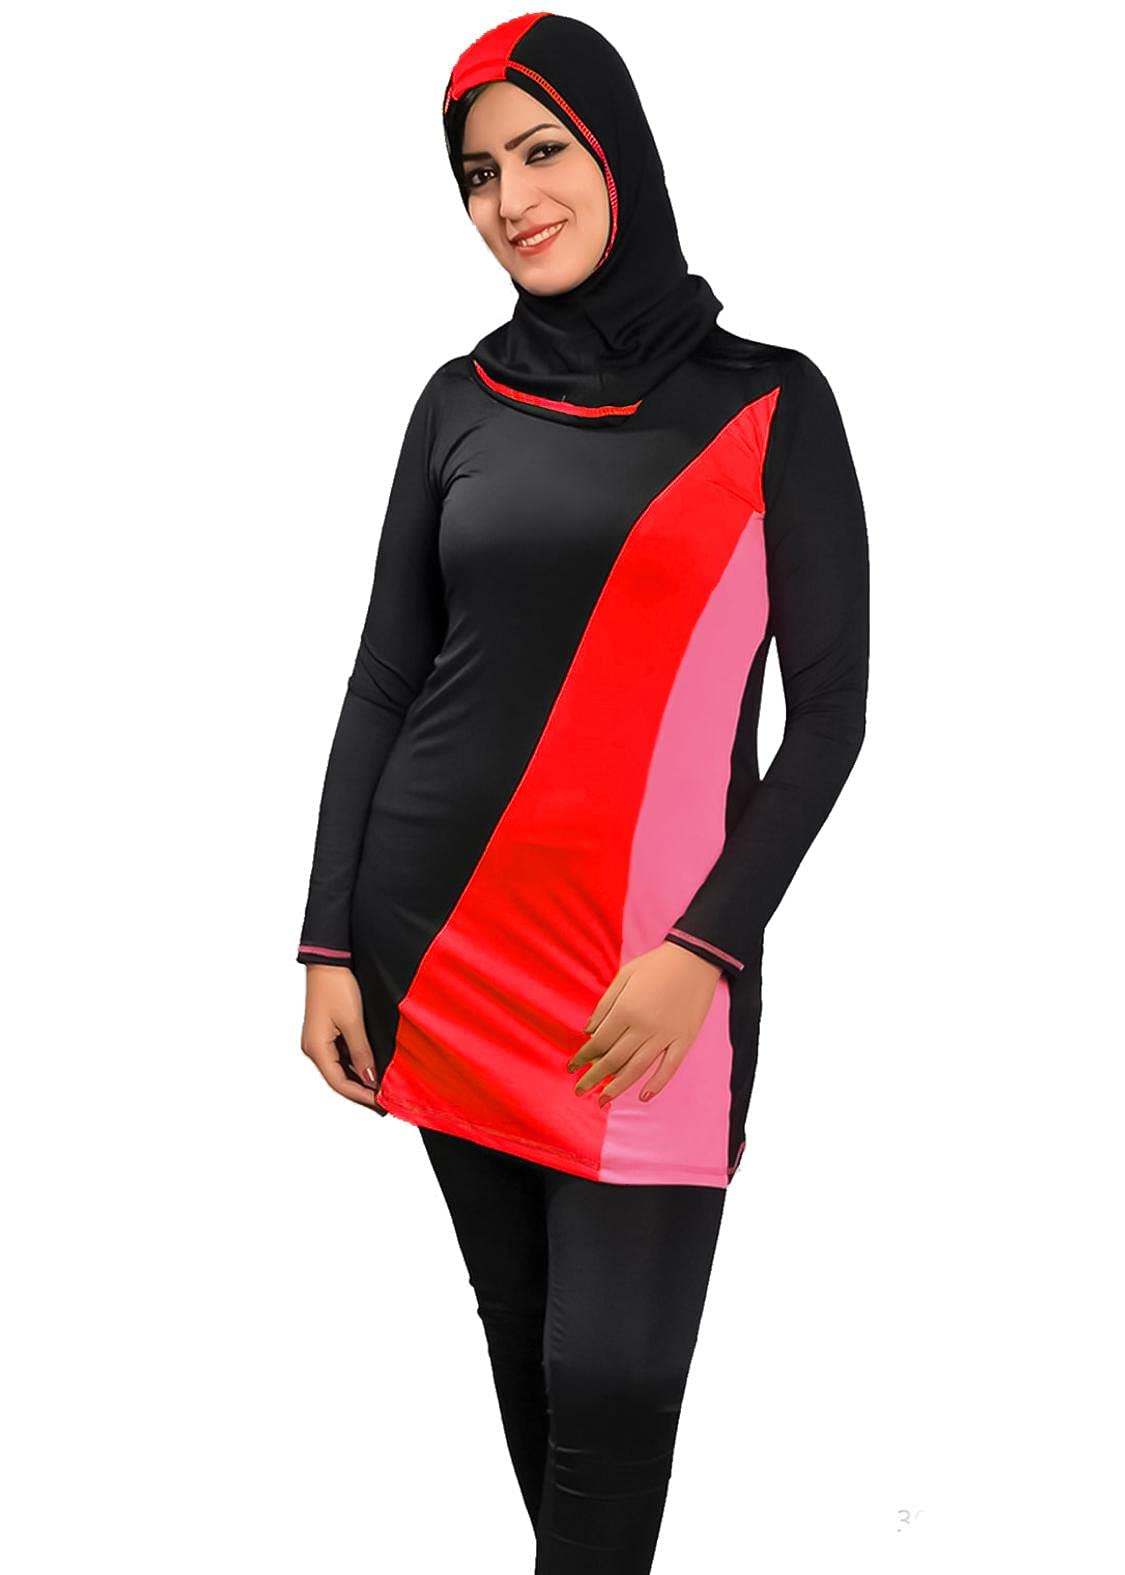 Sharia Burqini Swimwear - Color For Women , 2725618081040 Color Black Size XL